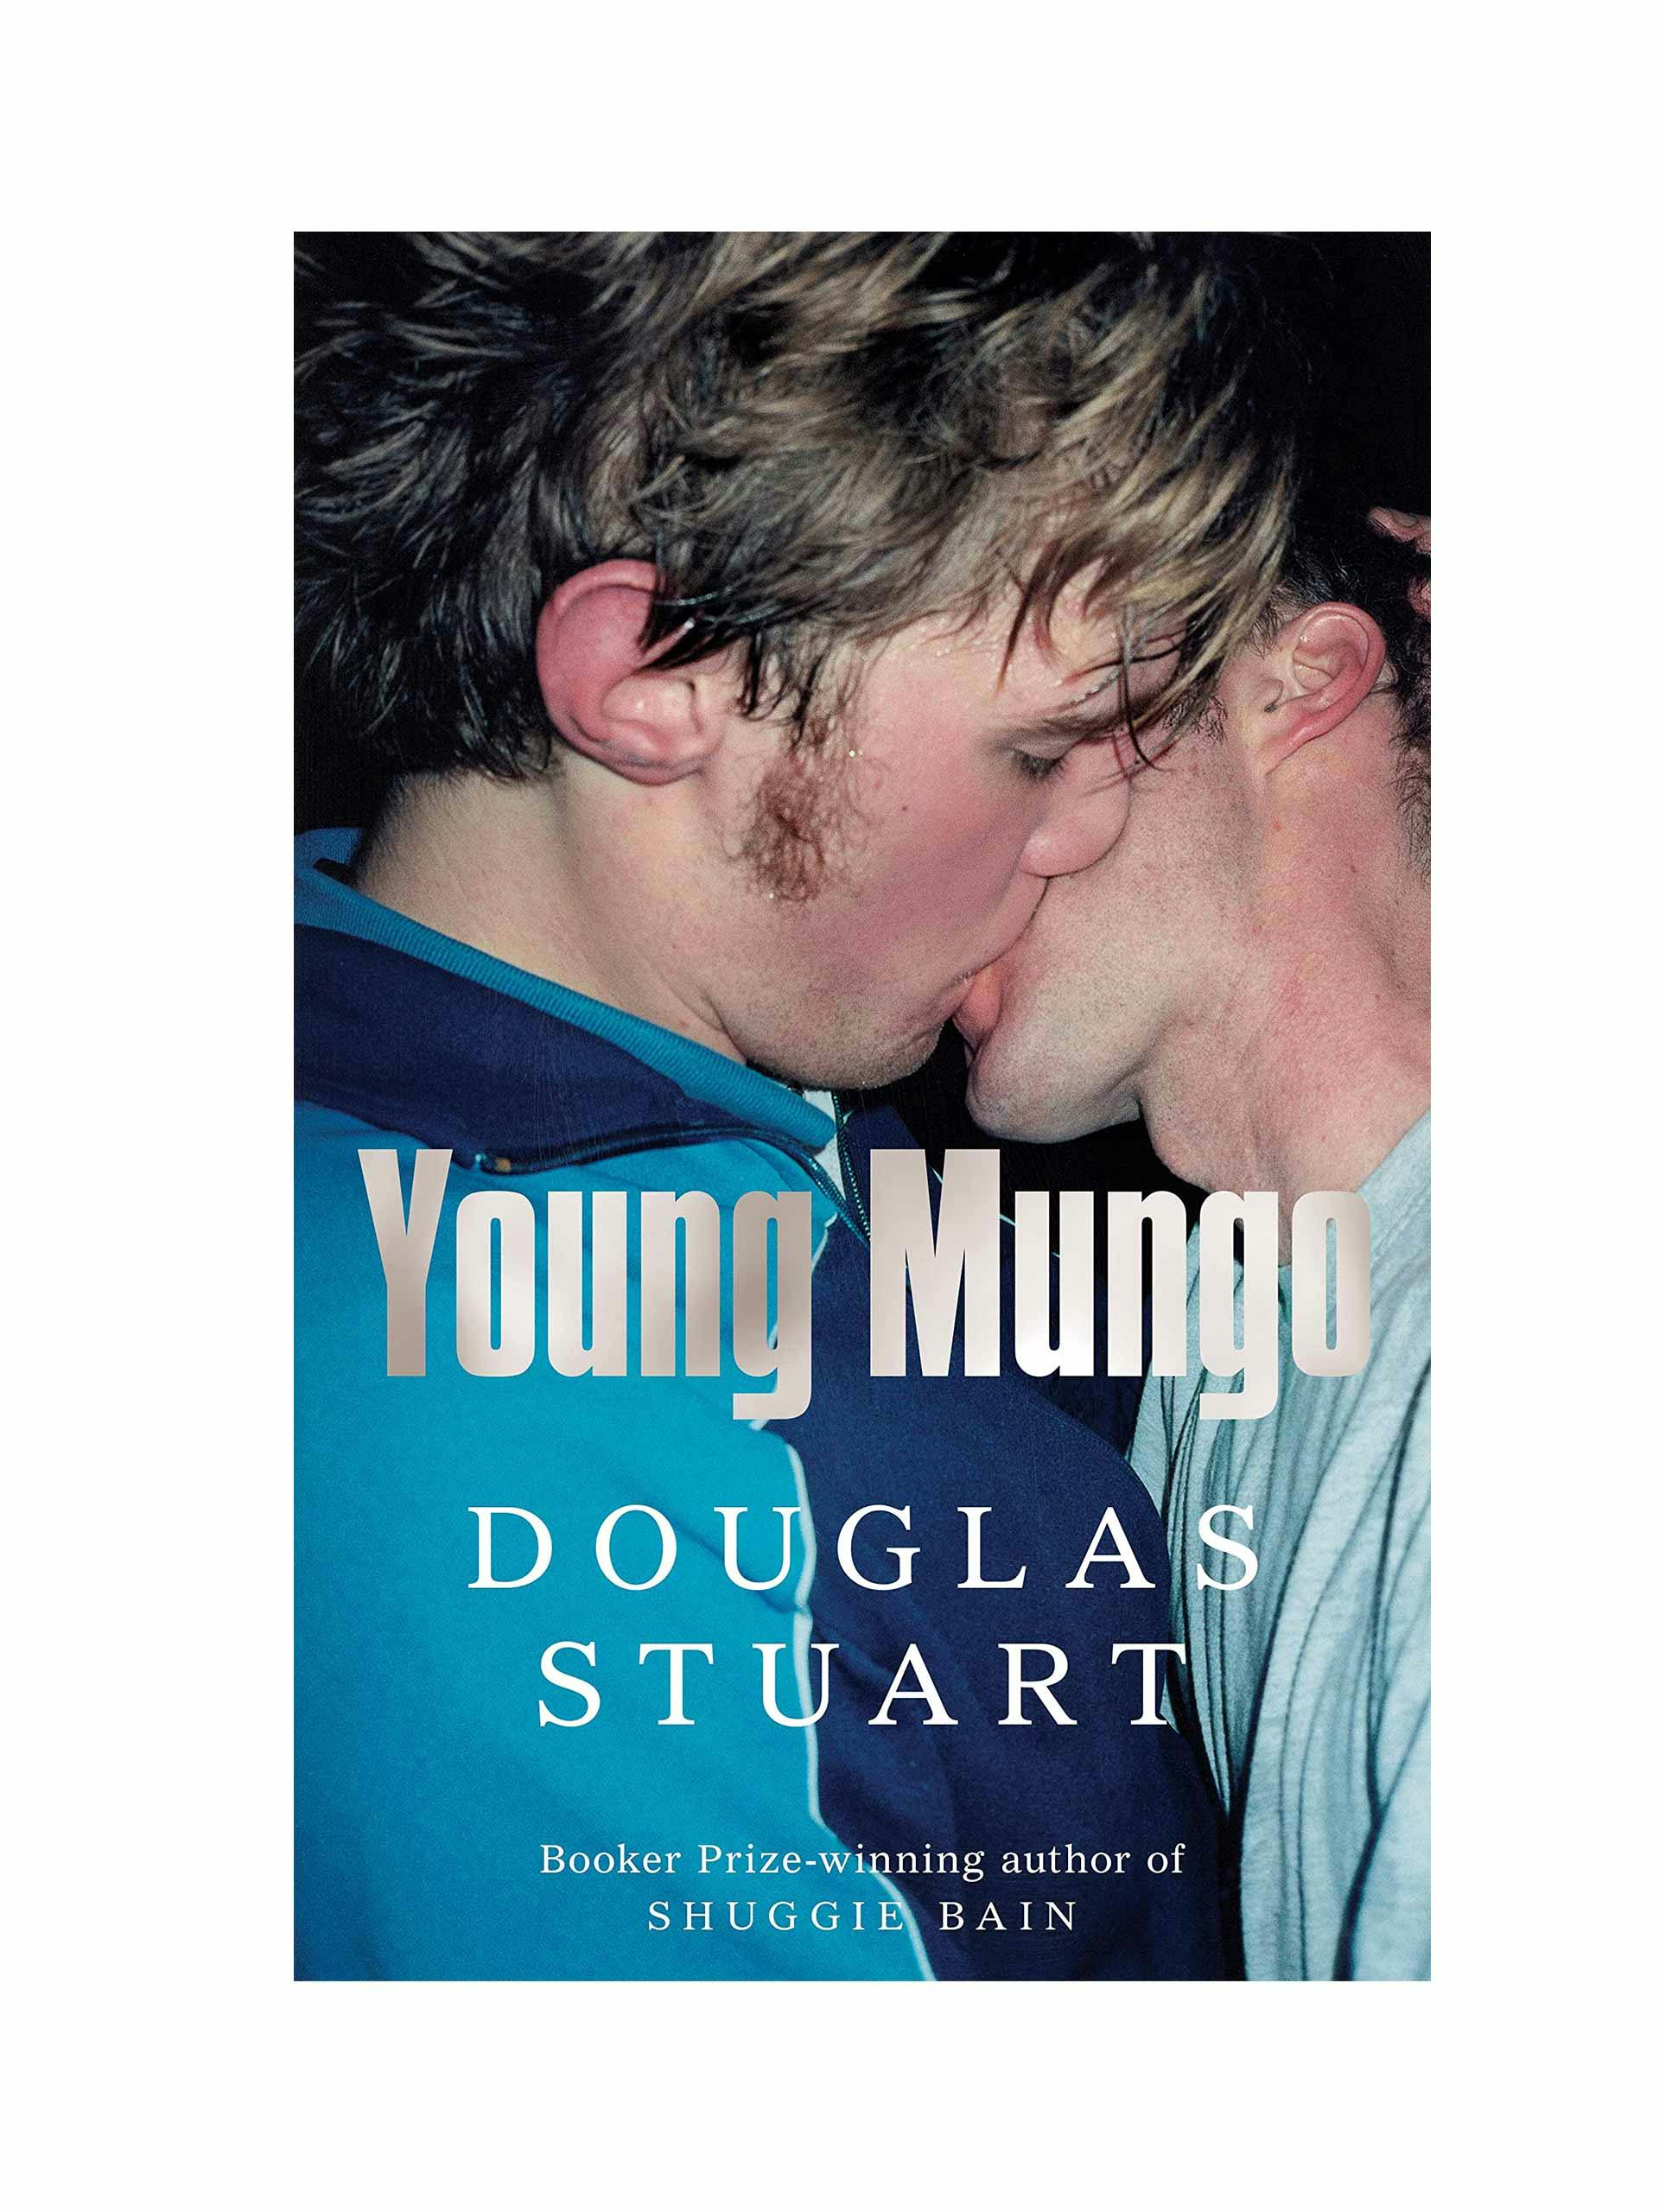 Douglas Stuart